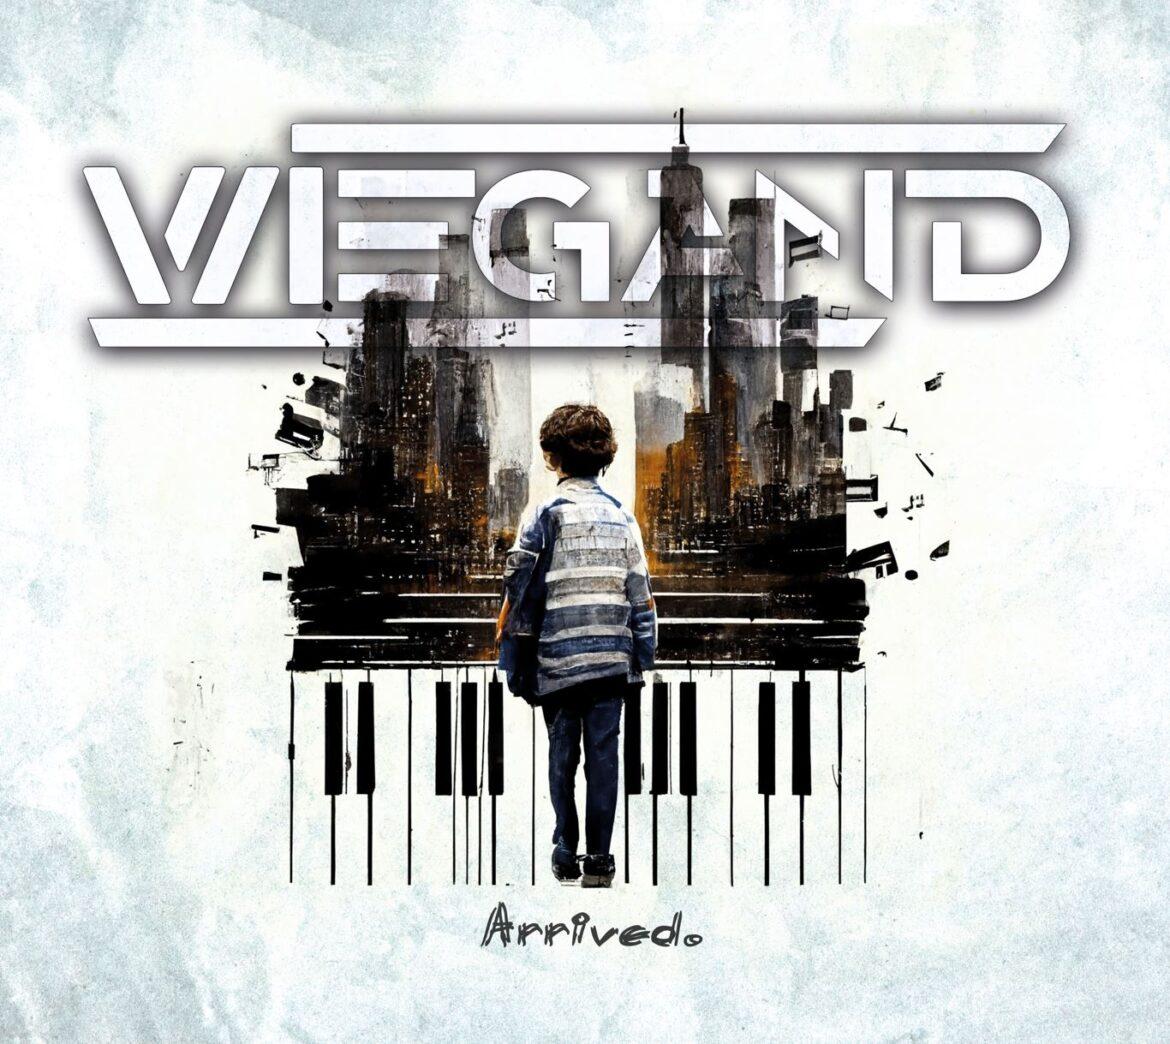 Das Cover von WIEGANDs Album 'Arrived' zeigt eine geschmückte Zeichnung eines Jungen vor einer Piaono- Klaviatur. Erstellt hat es Helge Wiegand mithilfe einer KI.